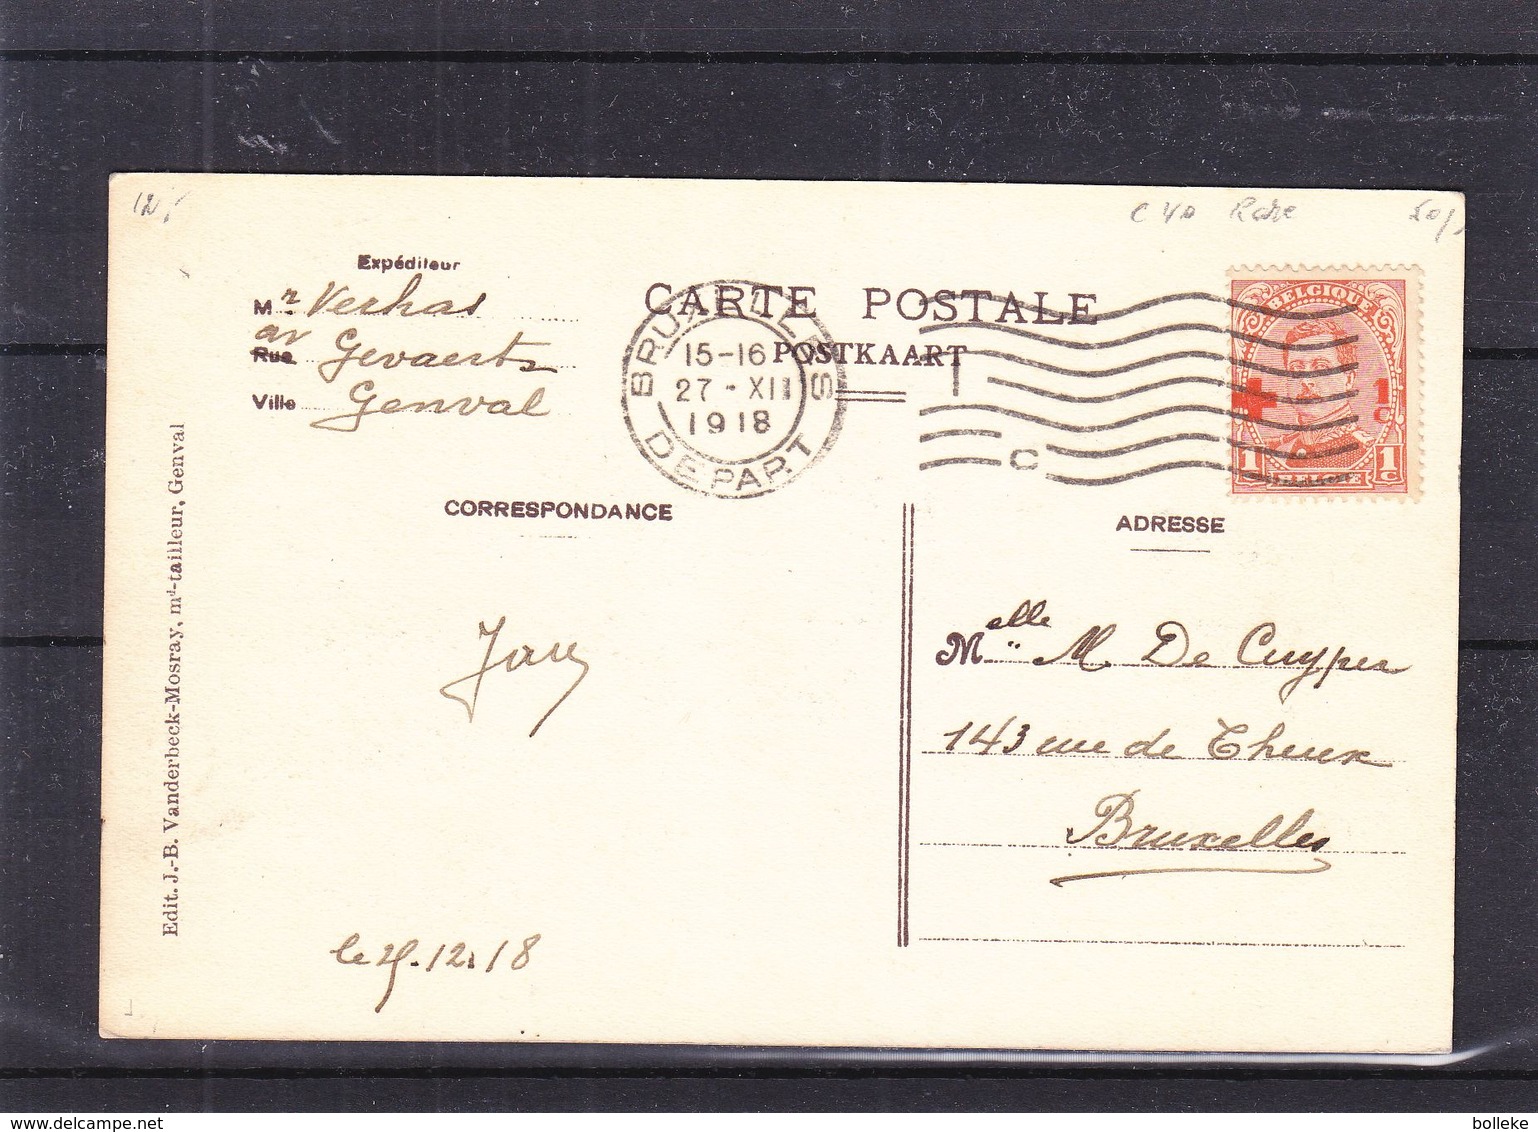 Croix Rouge - Belgique - Carte Postale De 1918 - Oblit Bruxelles - Avec Le 1c - Rare - Valeur 40 Euros - 1918 Rode Kruis